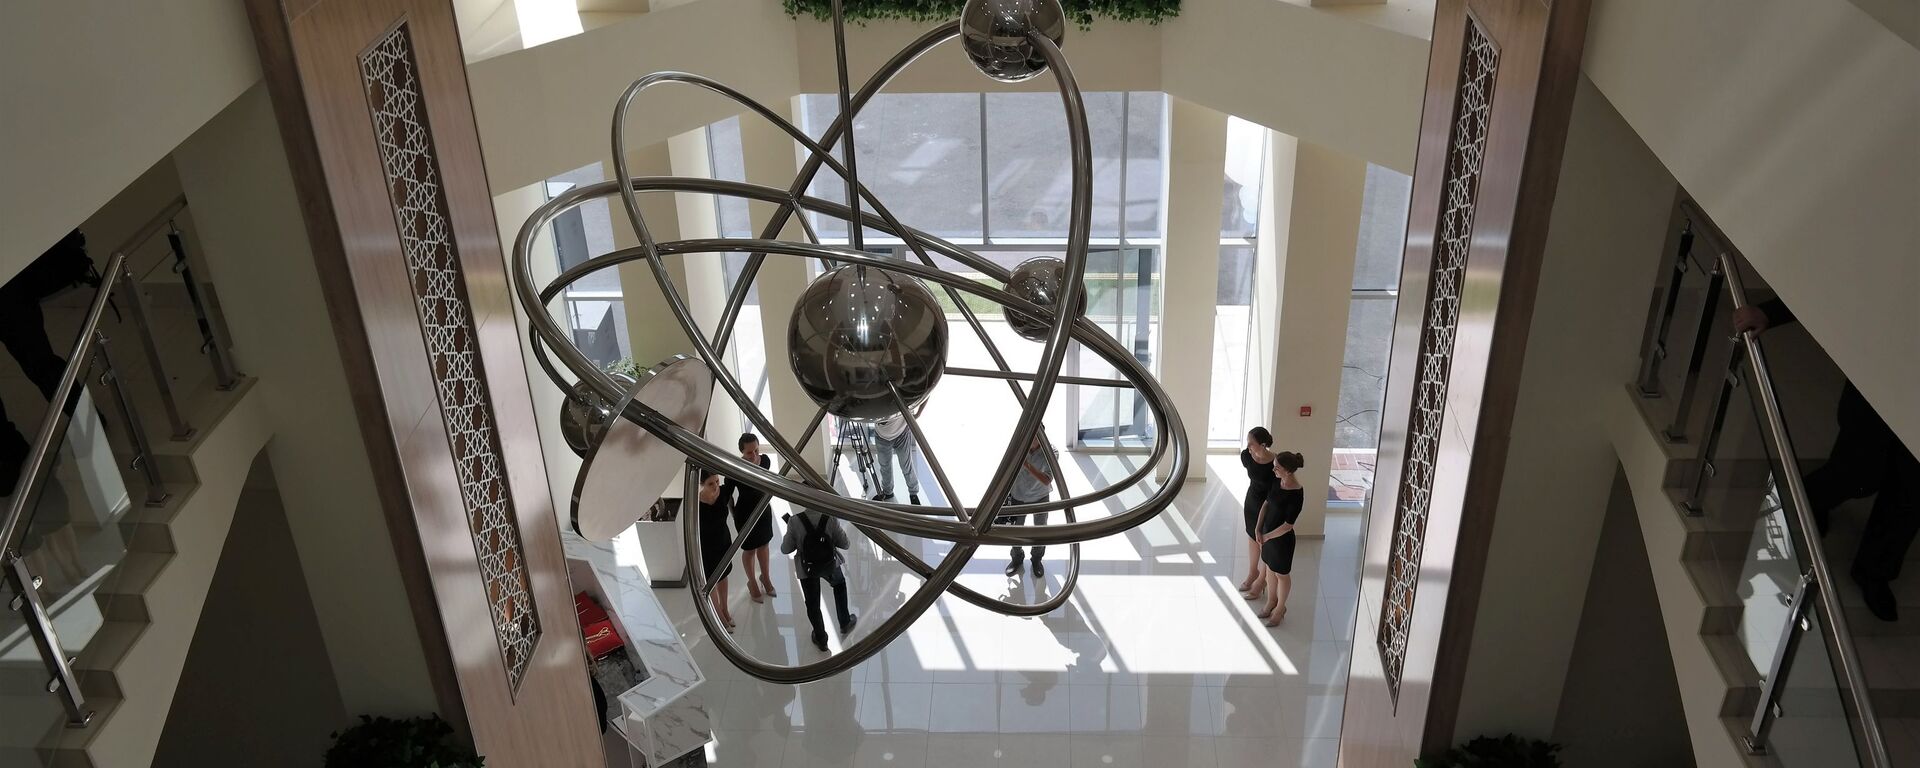 Люстра в форме атома в филиале НИЯУ МИФИ в Ташкенте - Sputnik Узбекистан, 1920, 01.04.2021